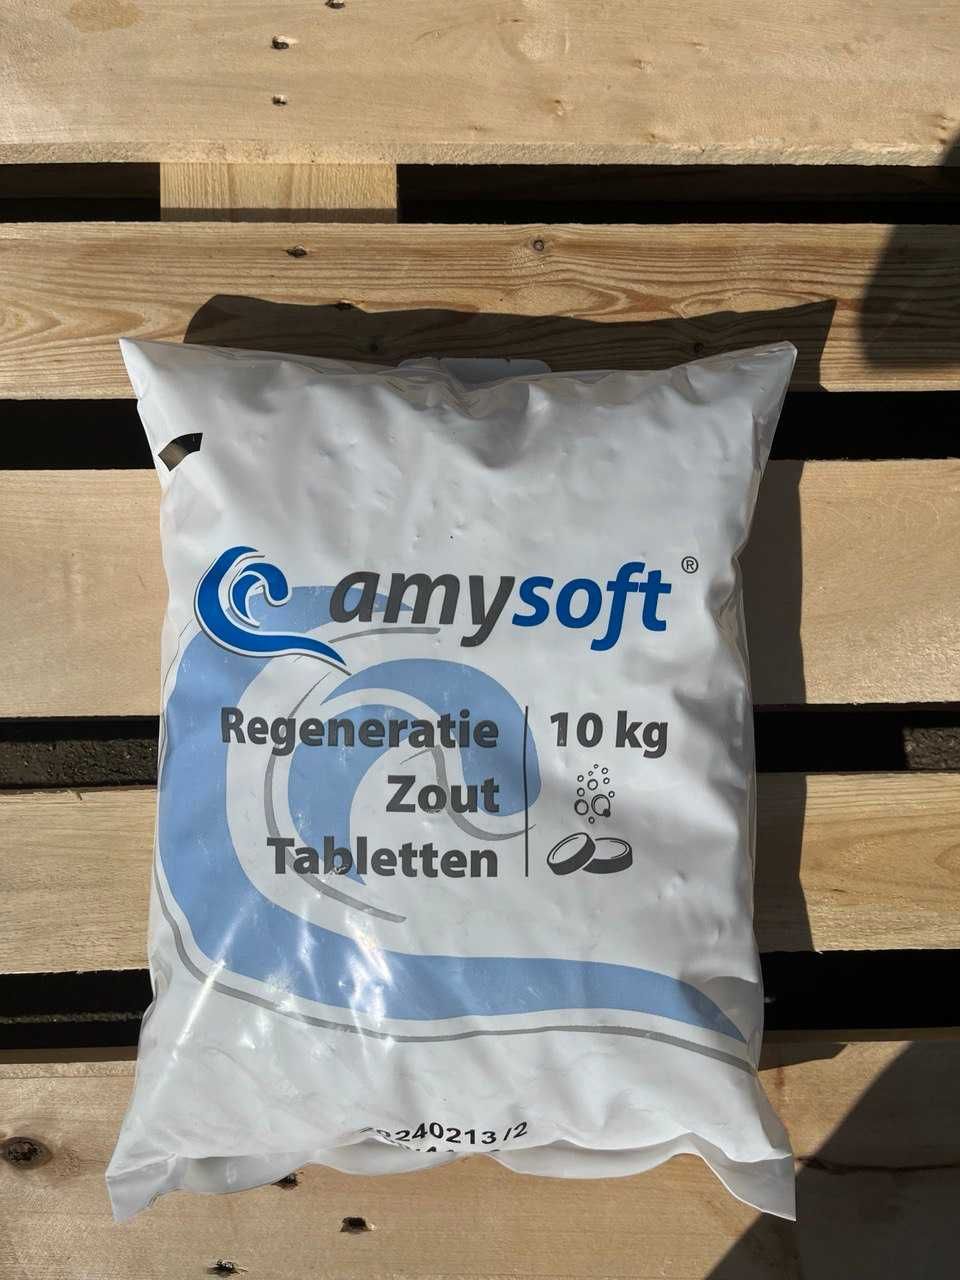 Сіль для очищення Німеччина, соль таблетированная, 10кг